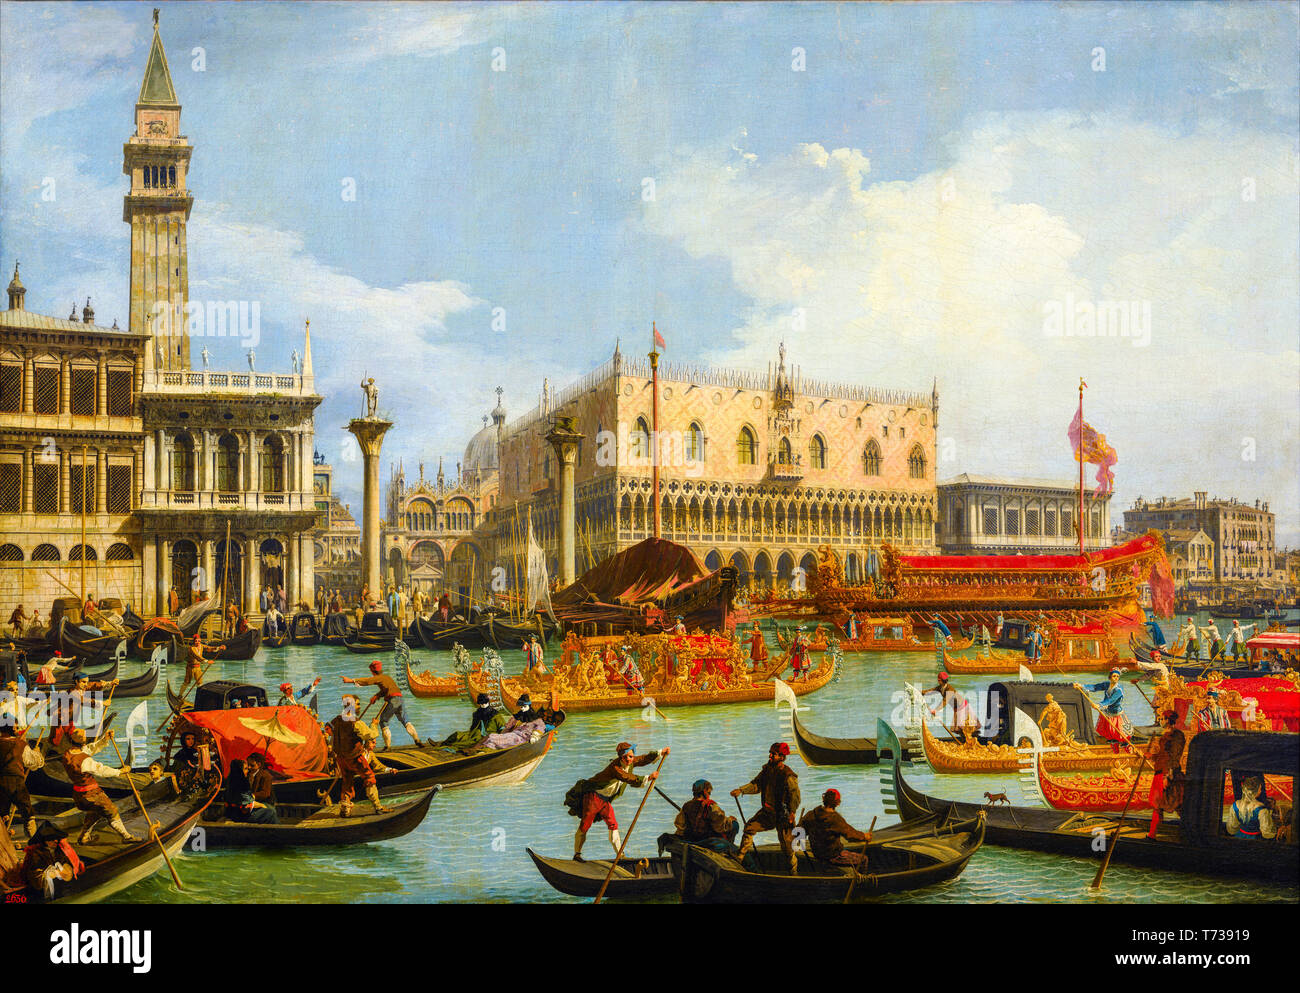 Canaletto, retour du Bucintoro au Molo le jour de l'Ascension, peinture, ch. 1727 Banque D'Images